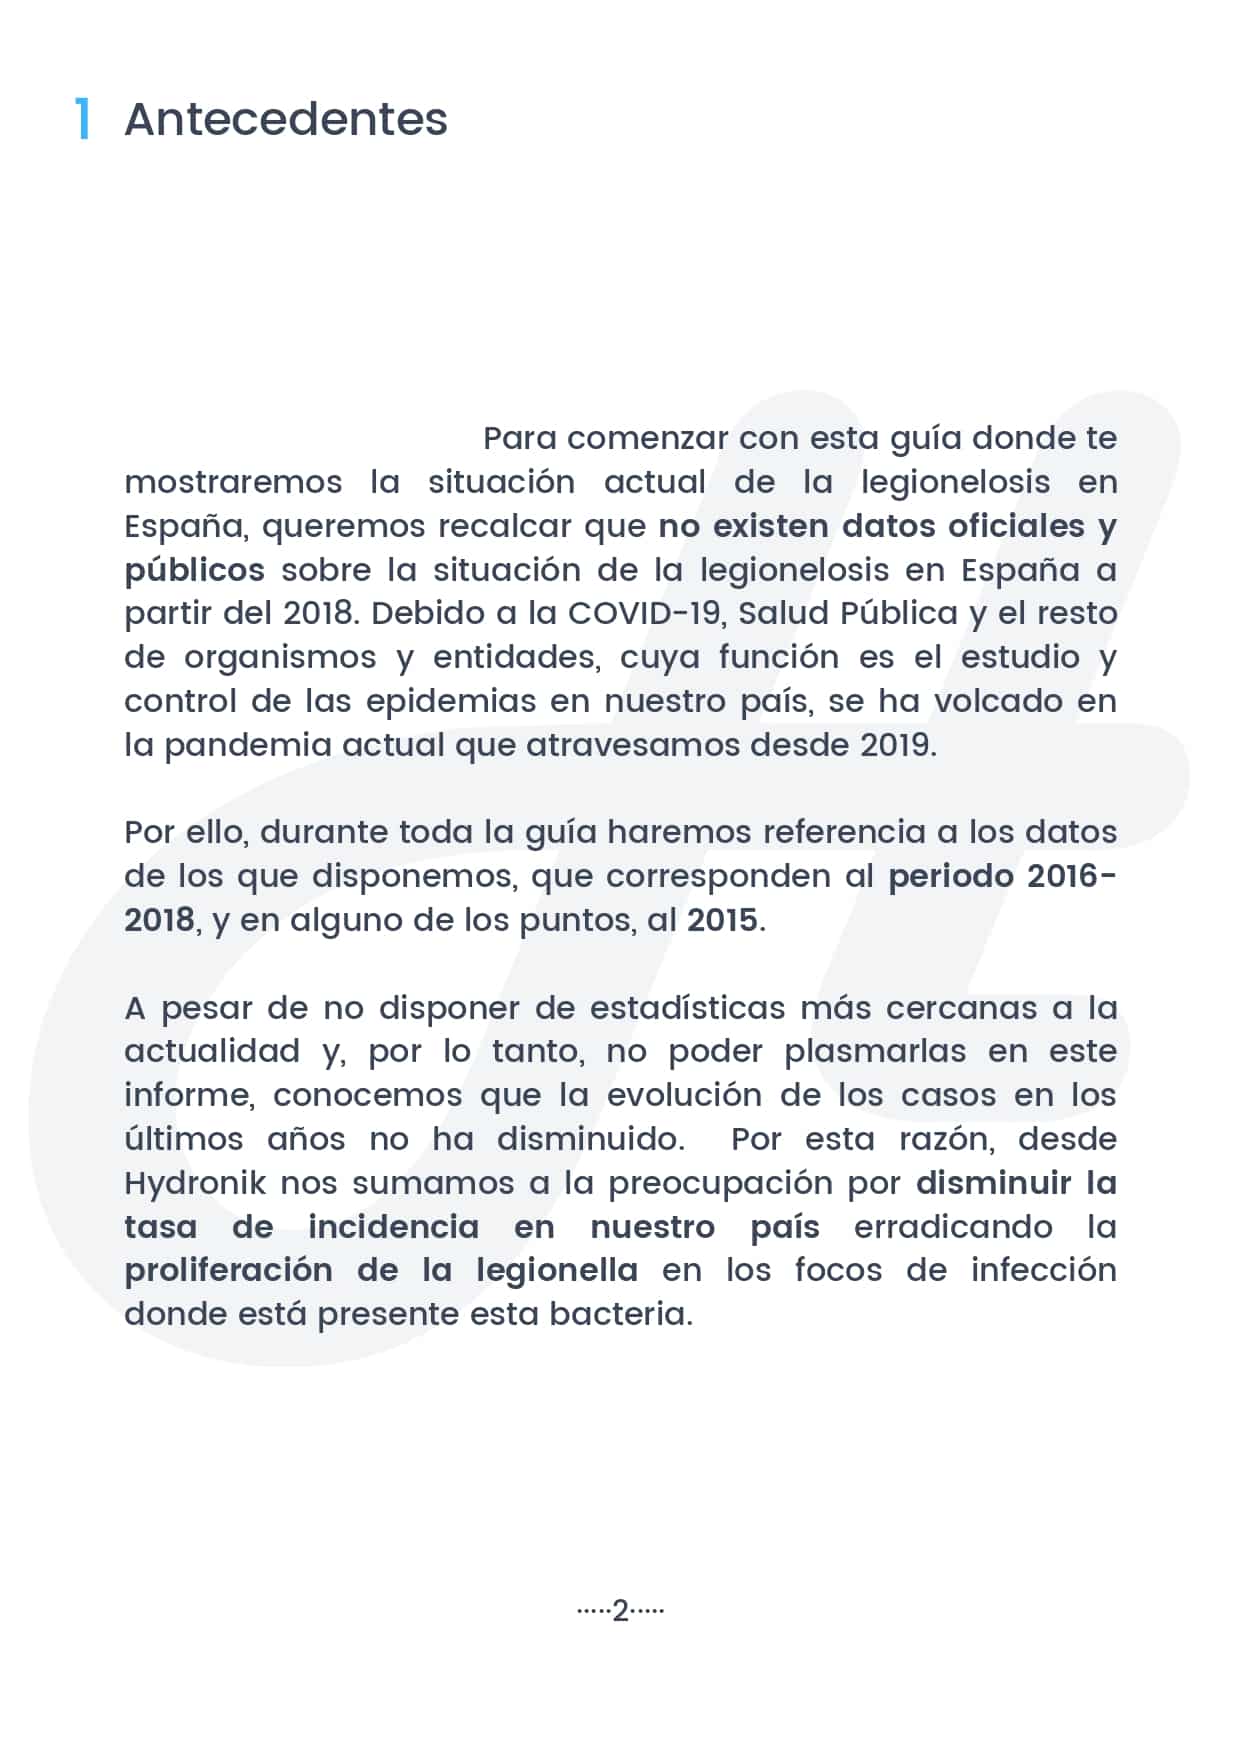 Guia sobre la situacion de la legionelosis en Espana 2021 3 page 0001